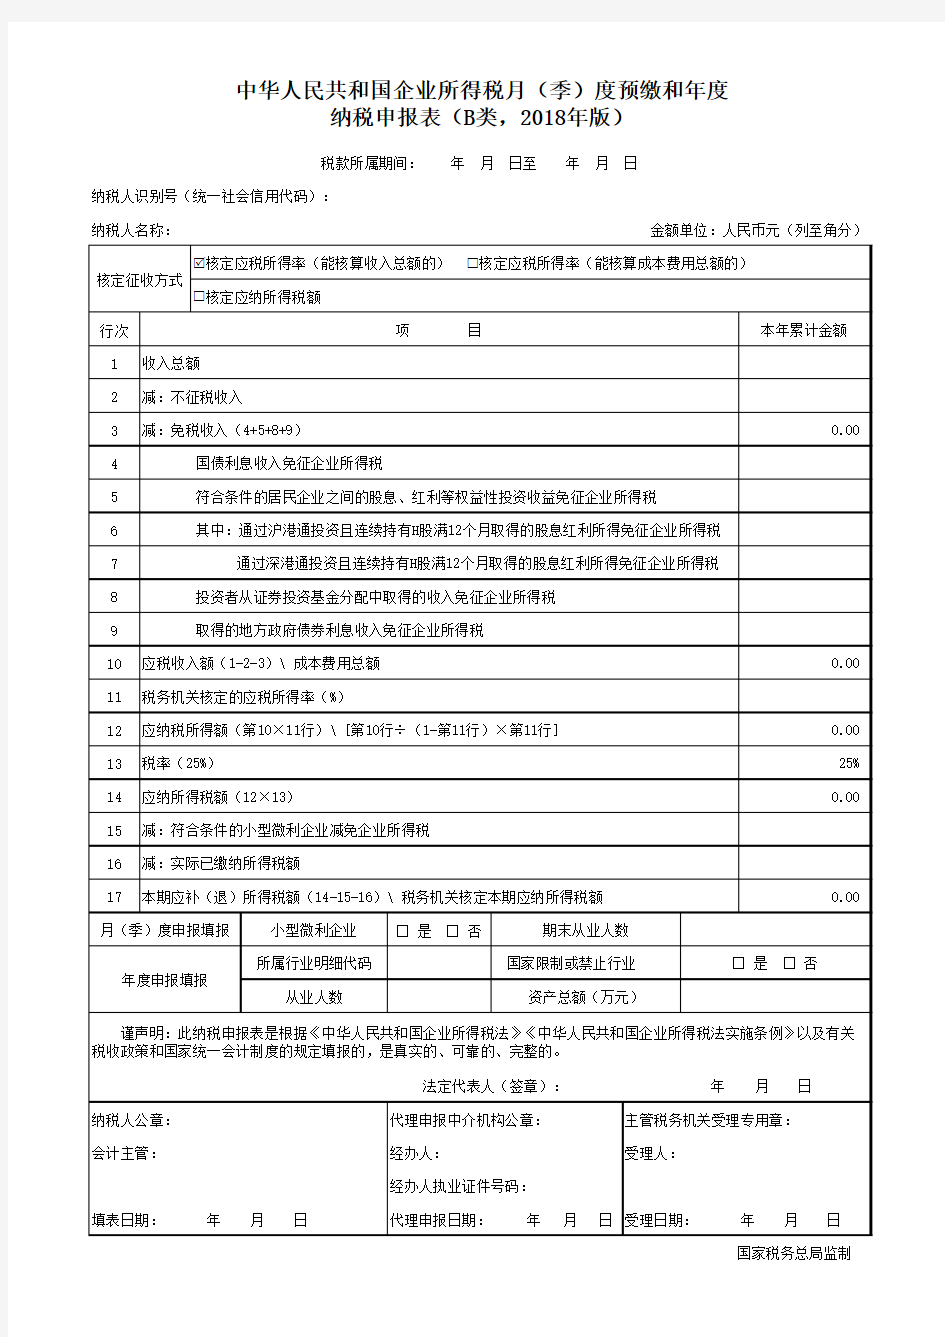 中华人民共和国企业所得税月(季)度预缴和年度纳税申报表(B类,2018年版)